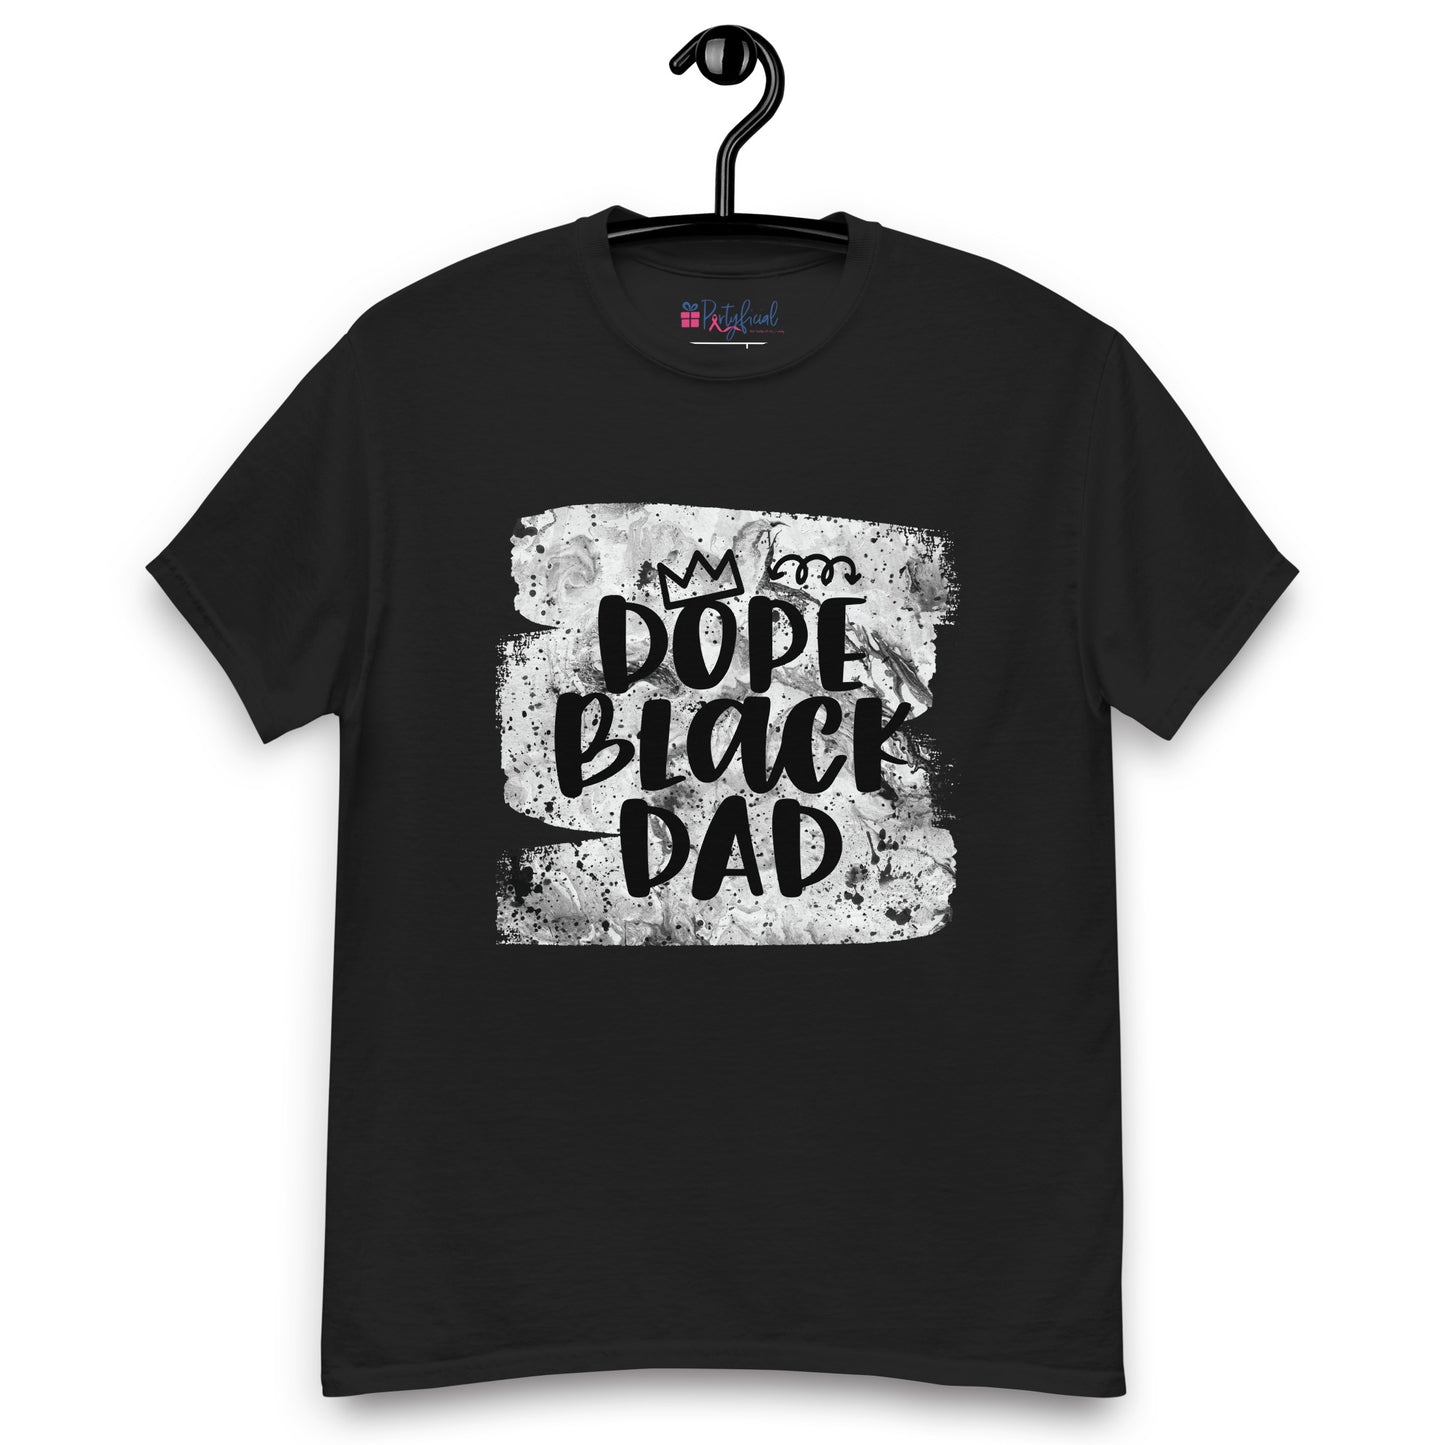 Dope Black Dad tee